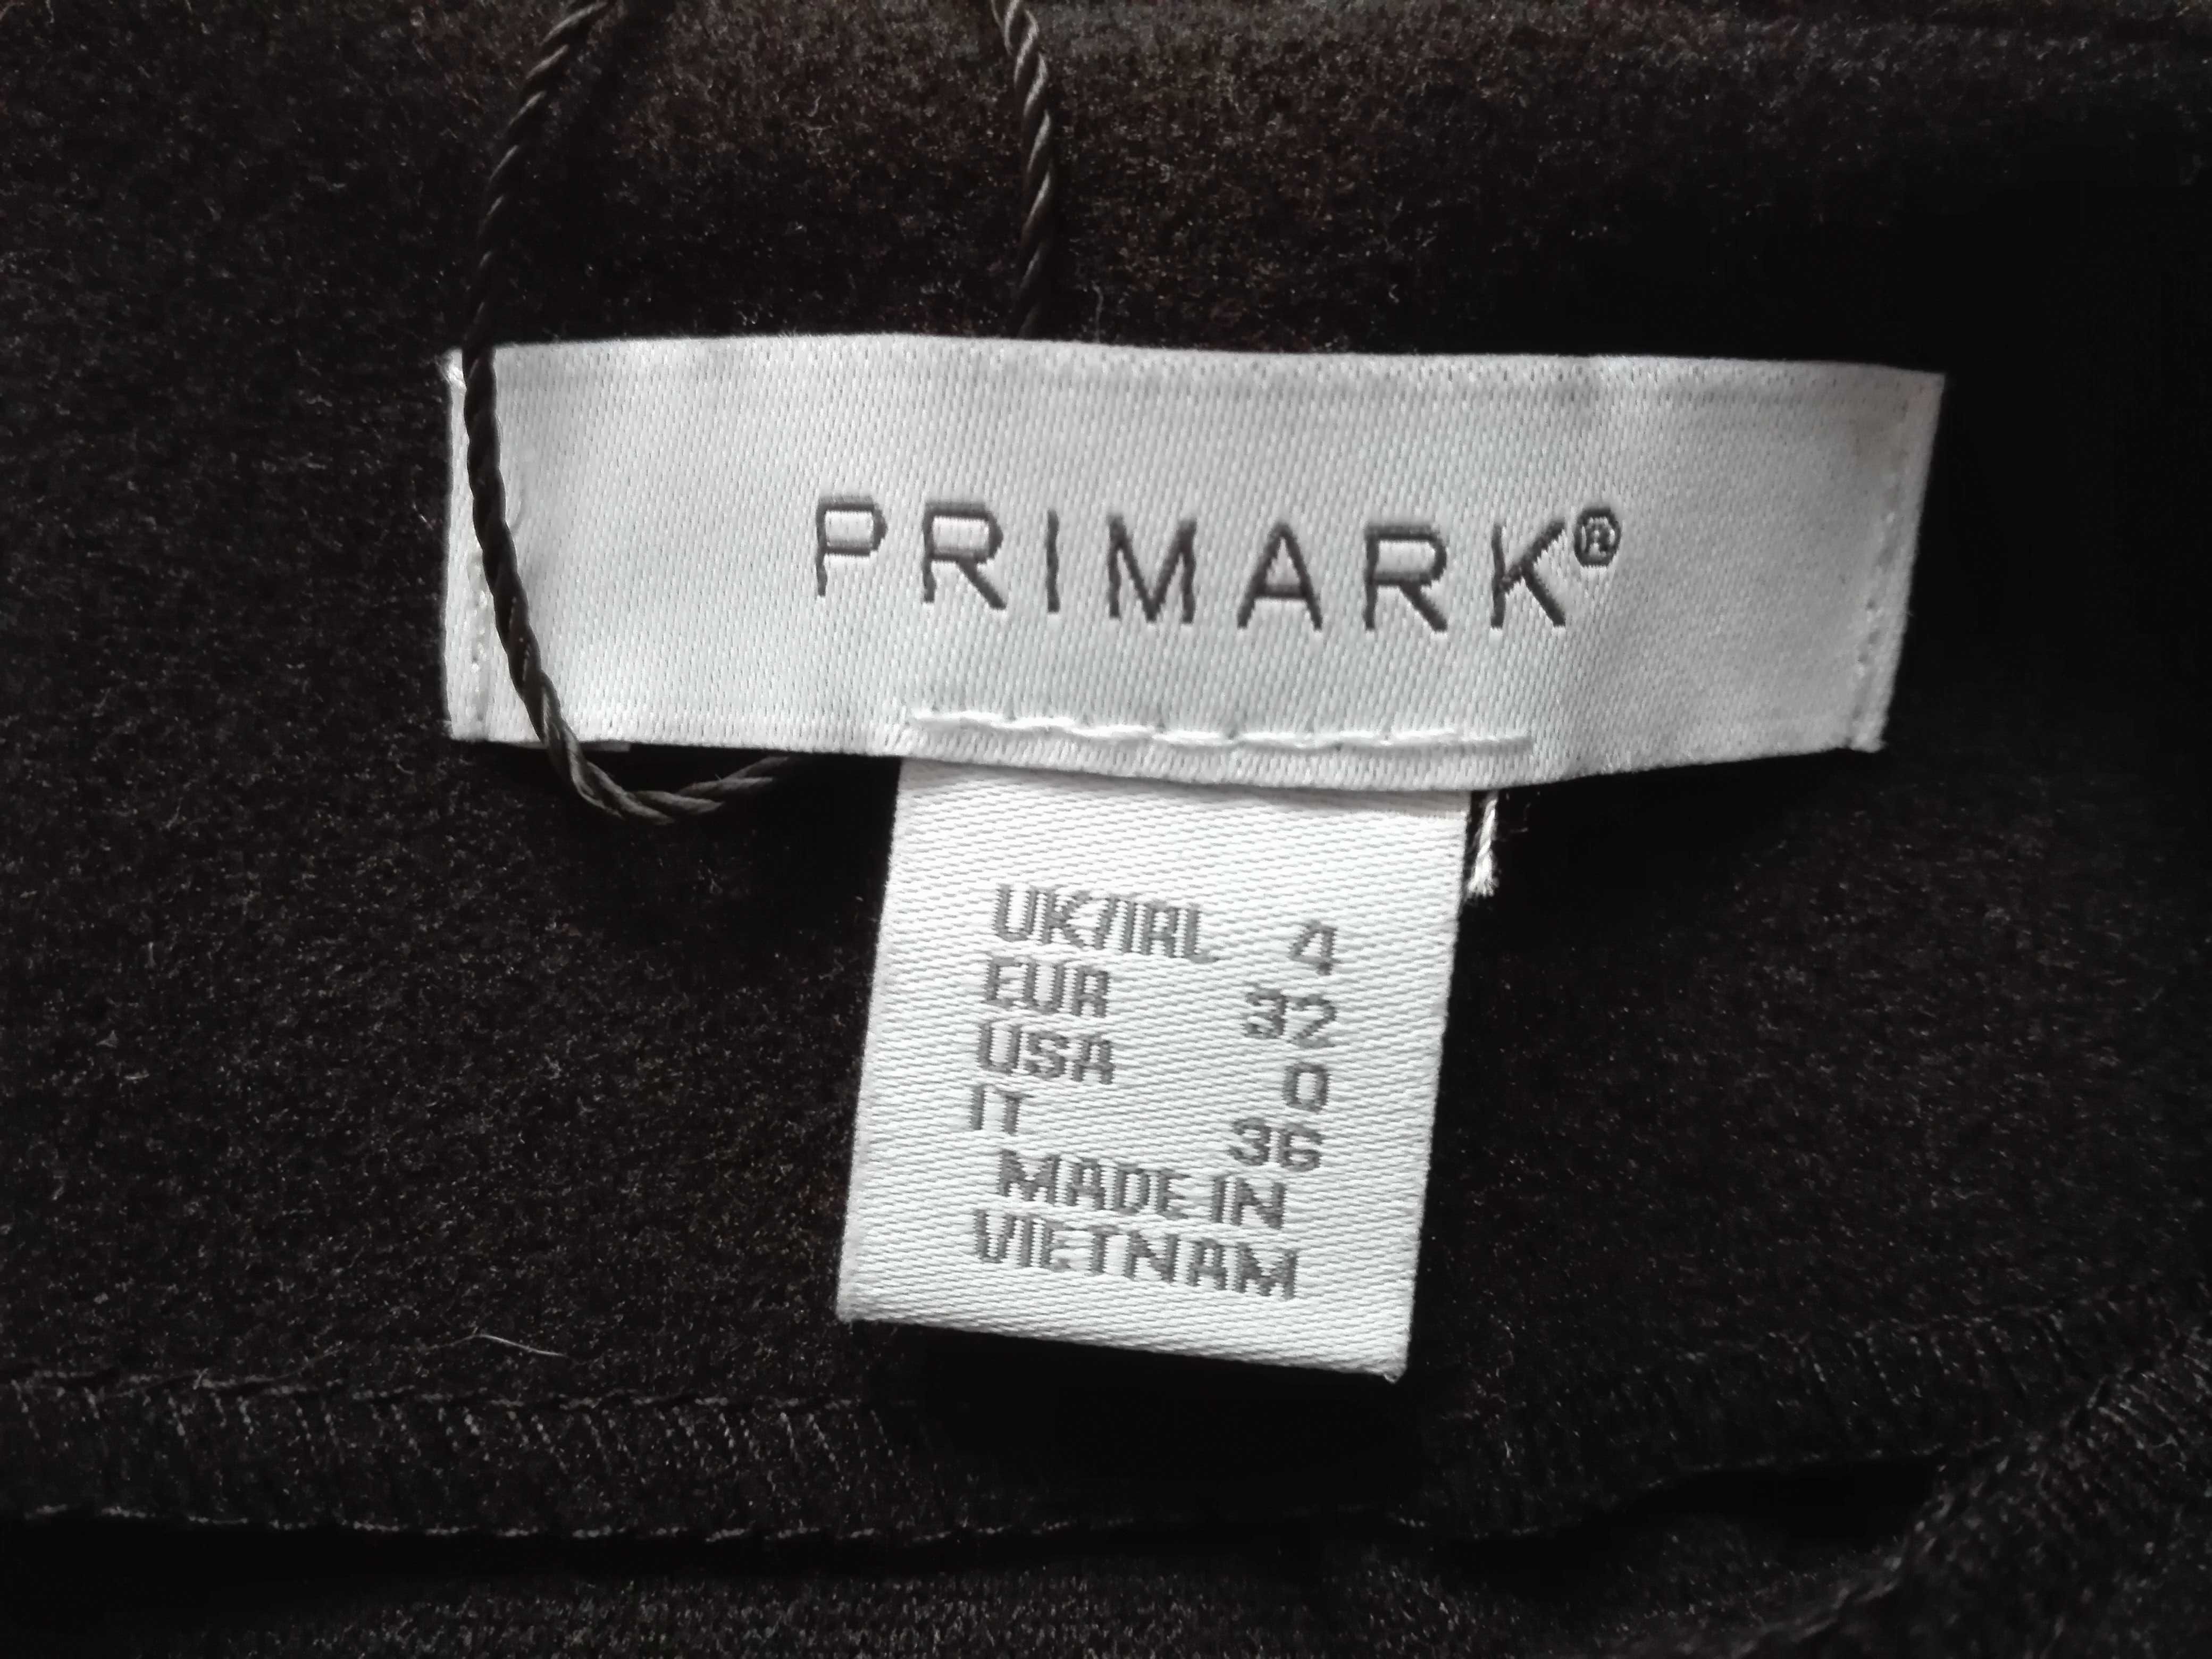 nowa, czarna ciepła spódnica/spódniczka firmy Primark, 34